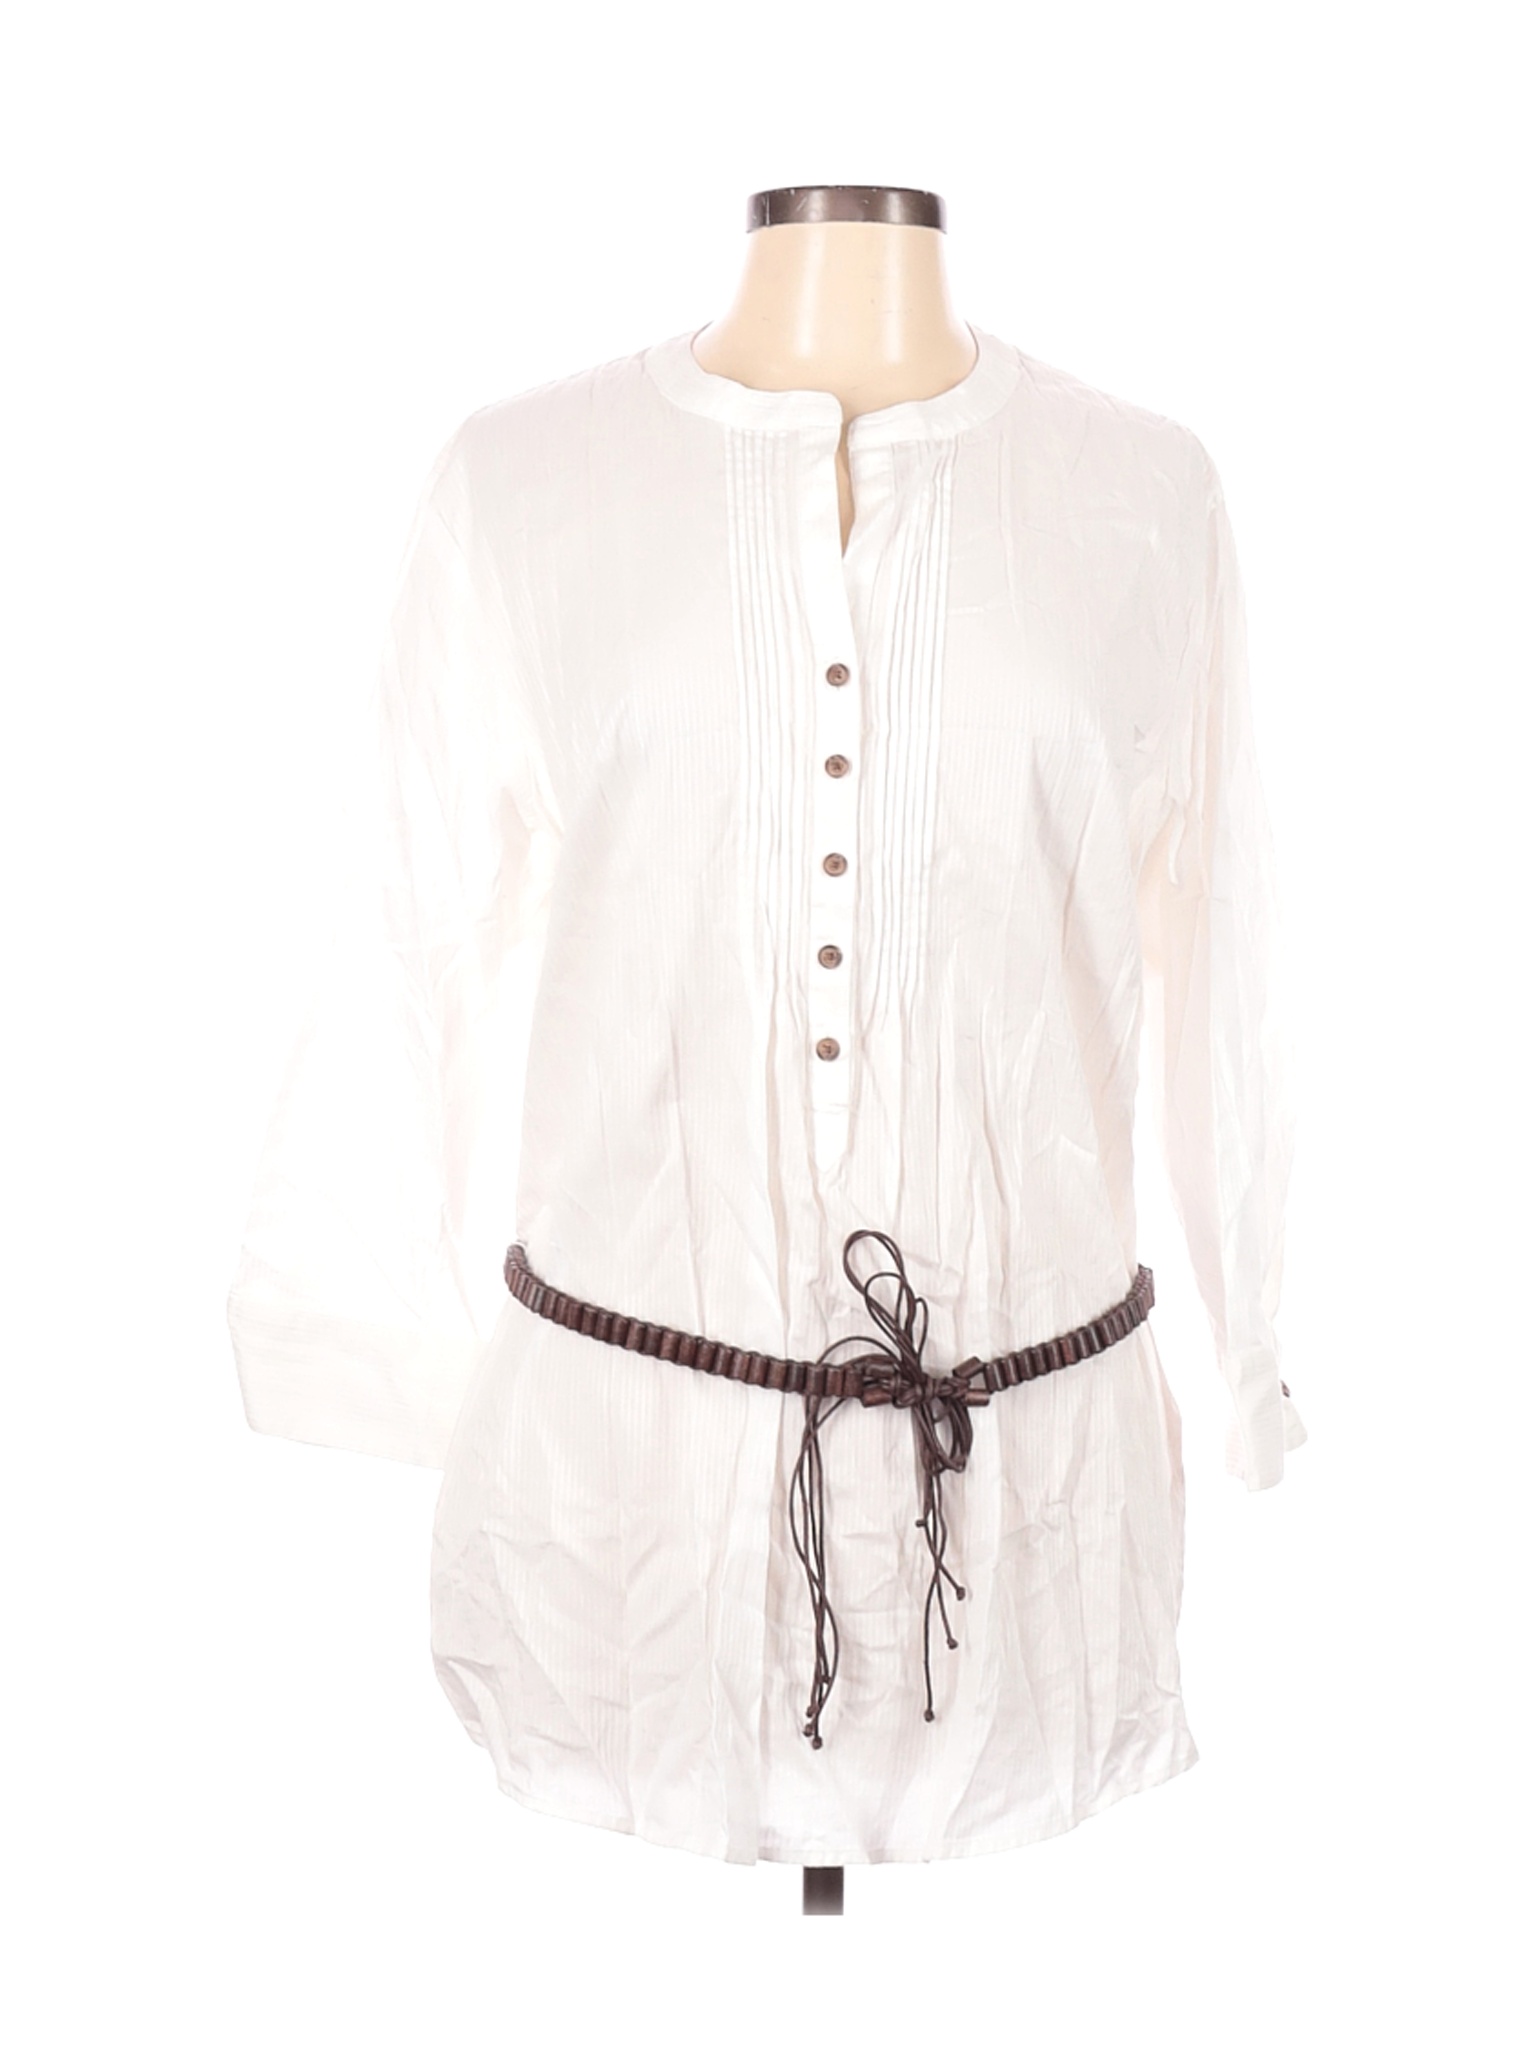 Jones New York Women White 3/4 Sleeve Blouse XL | eBay